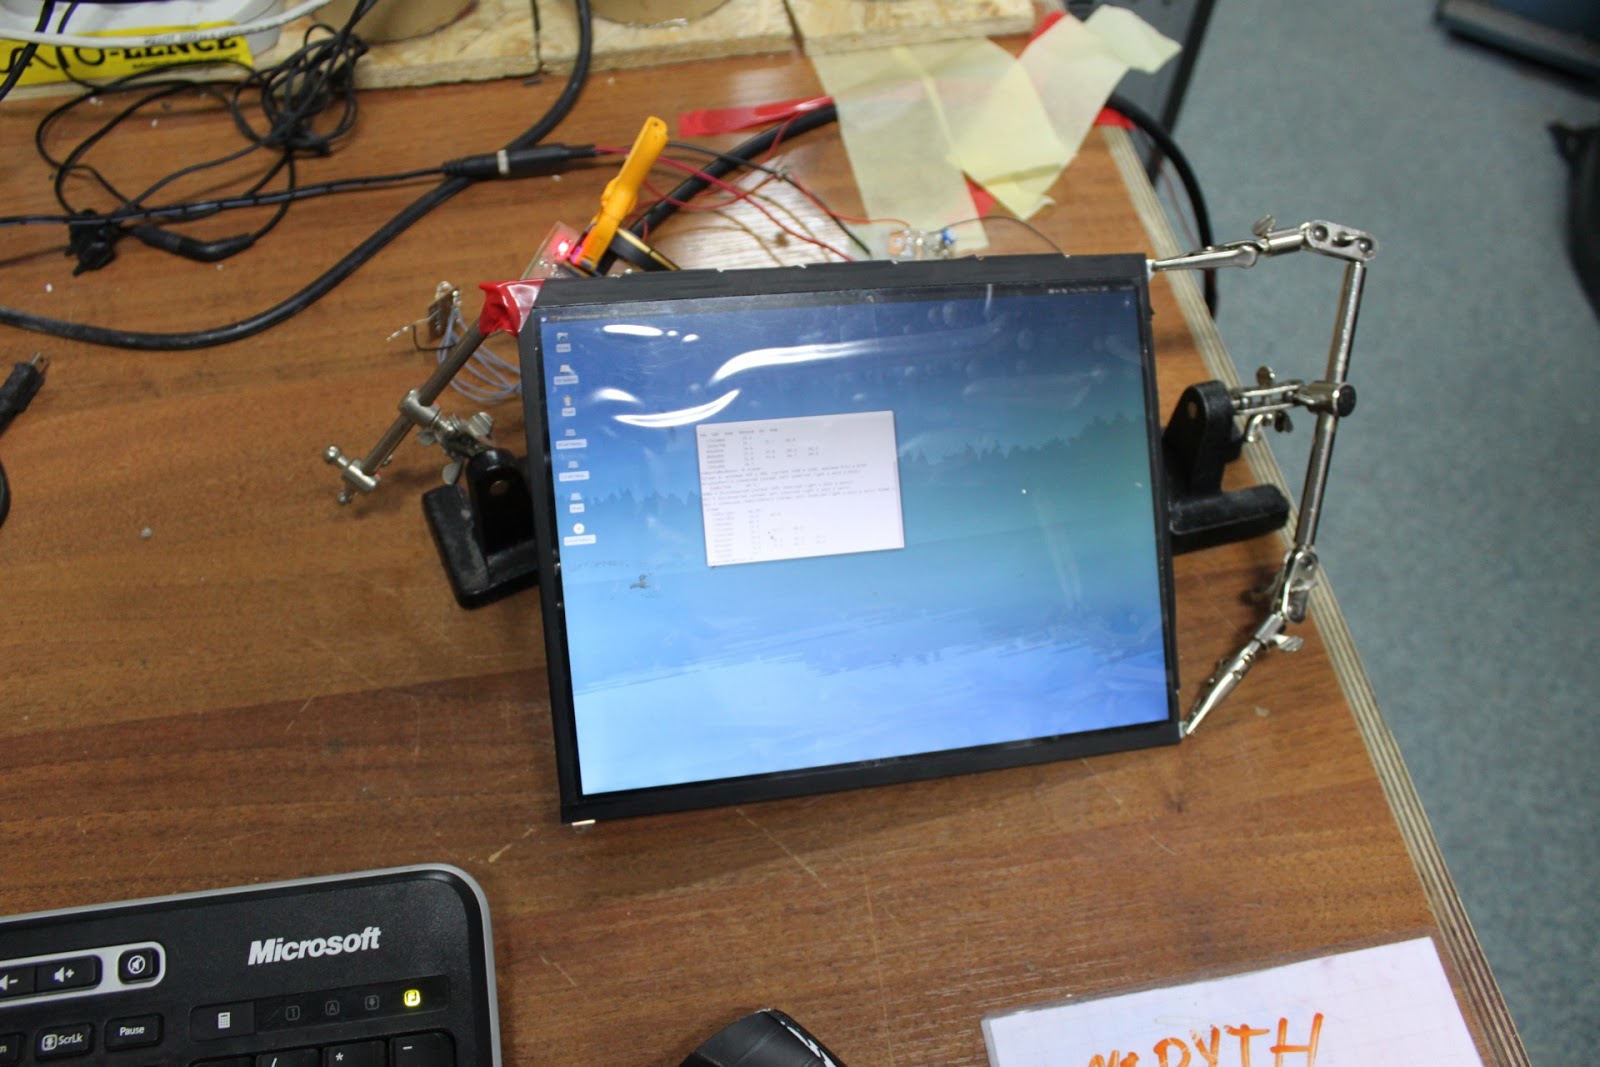 Polský hacker udělal z displeje iPadu externí monitor